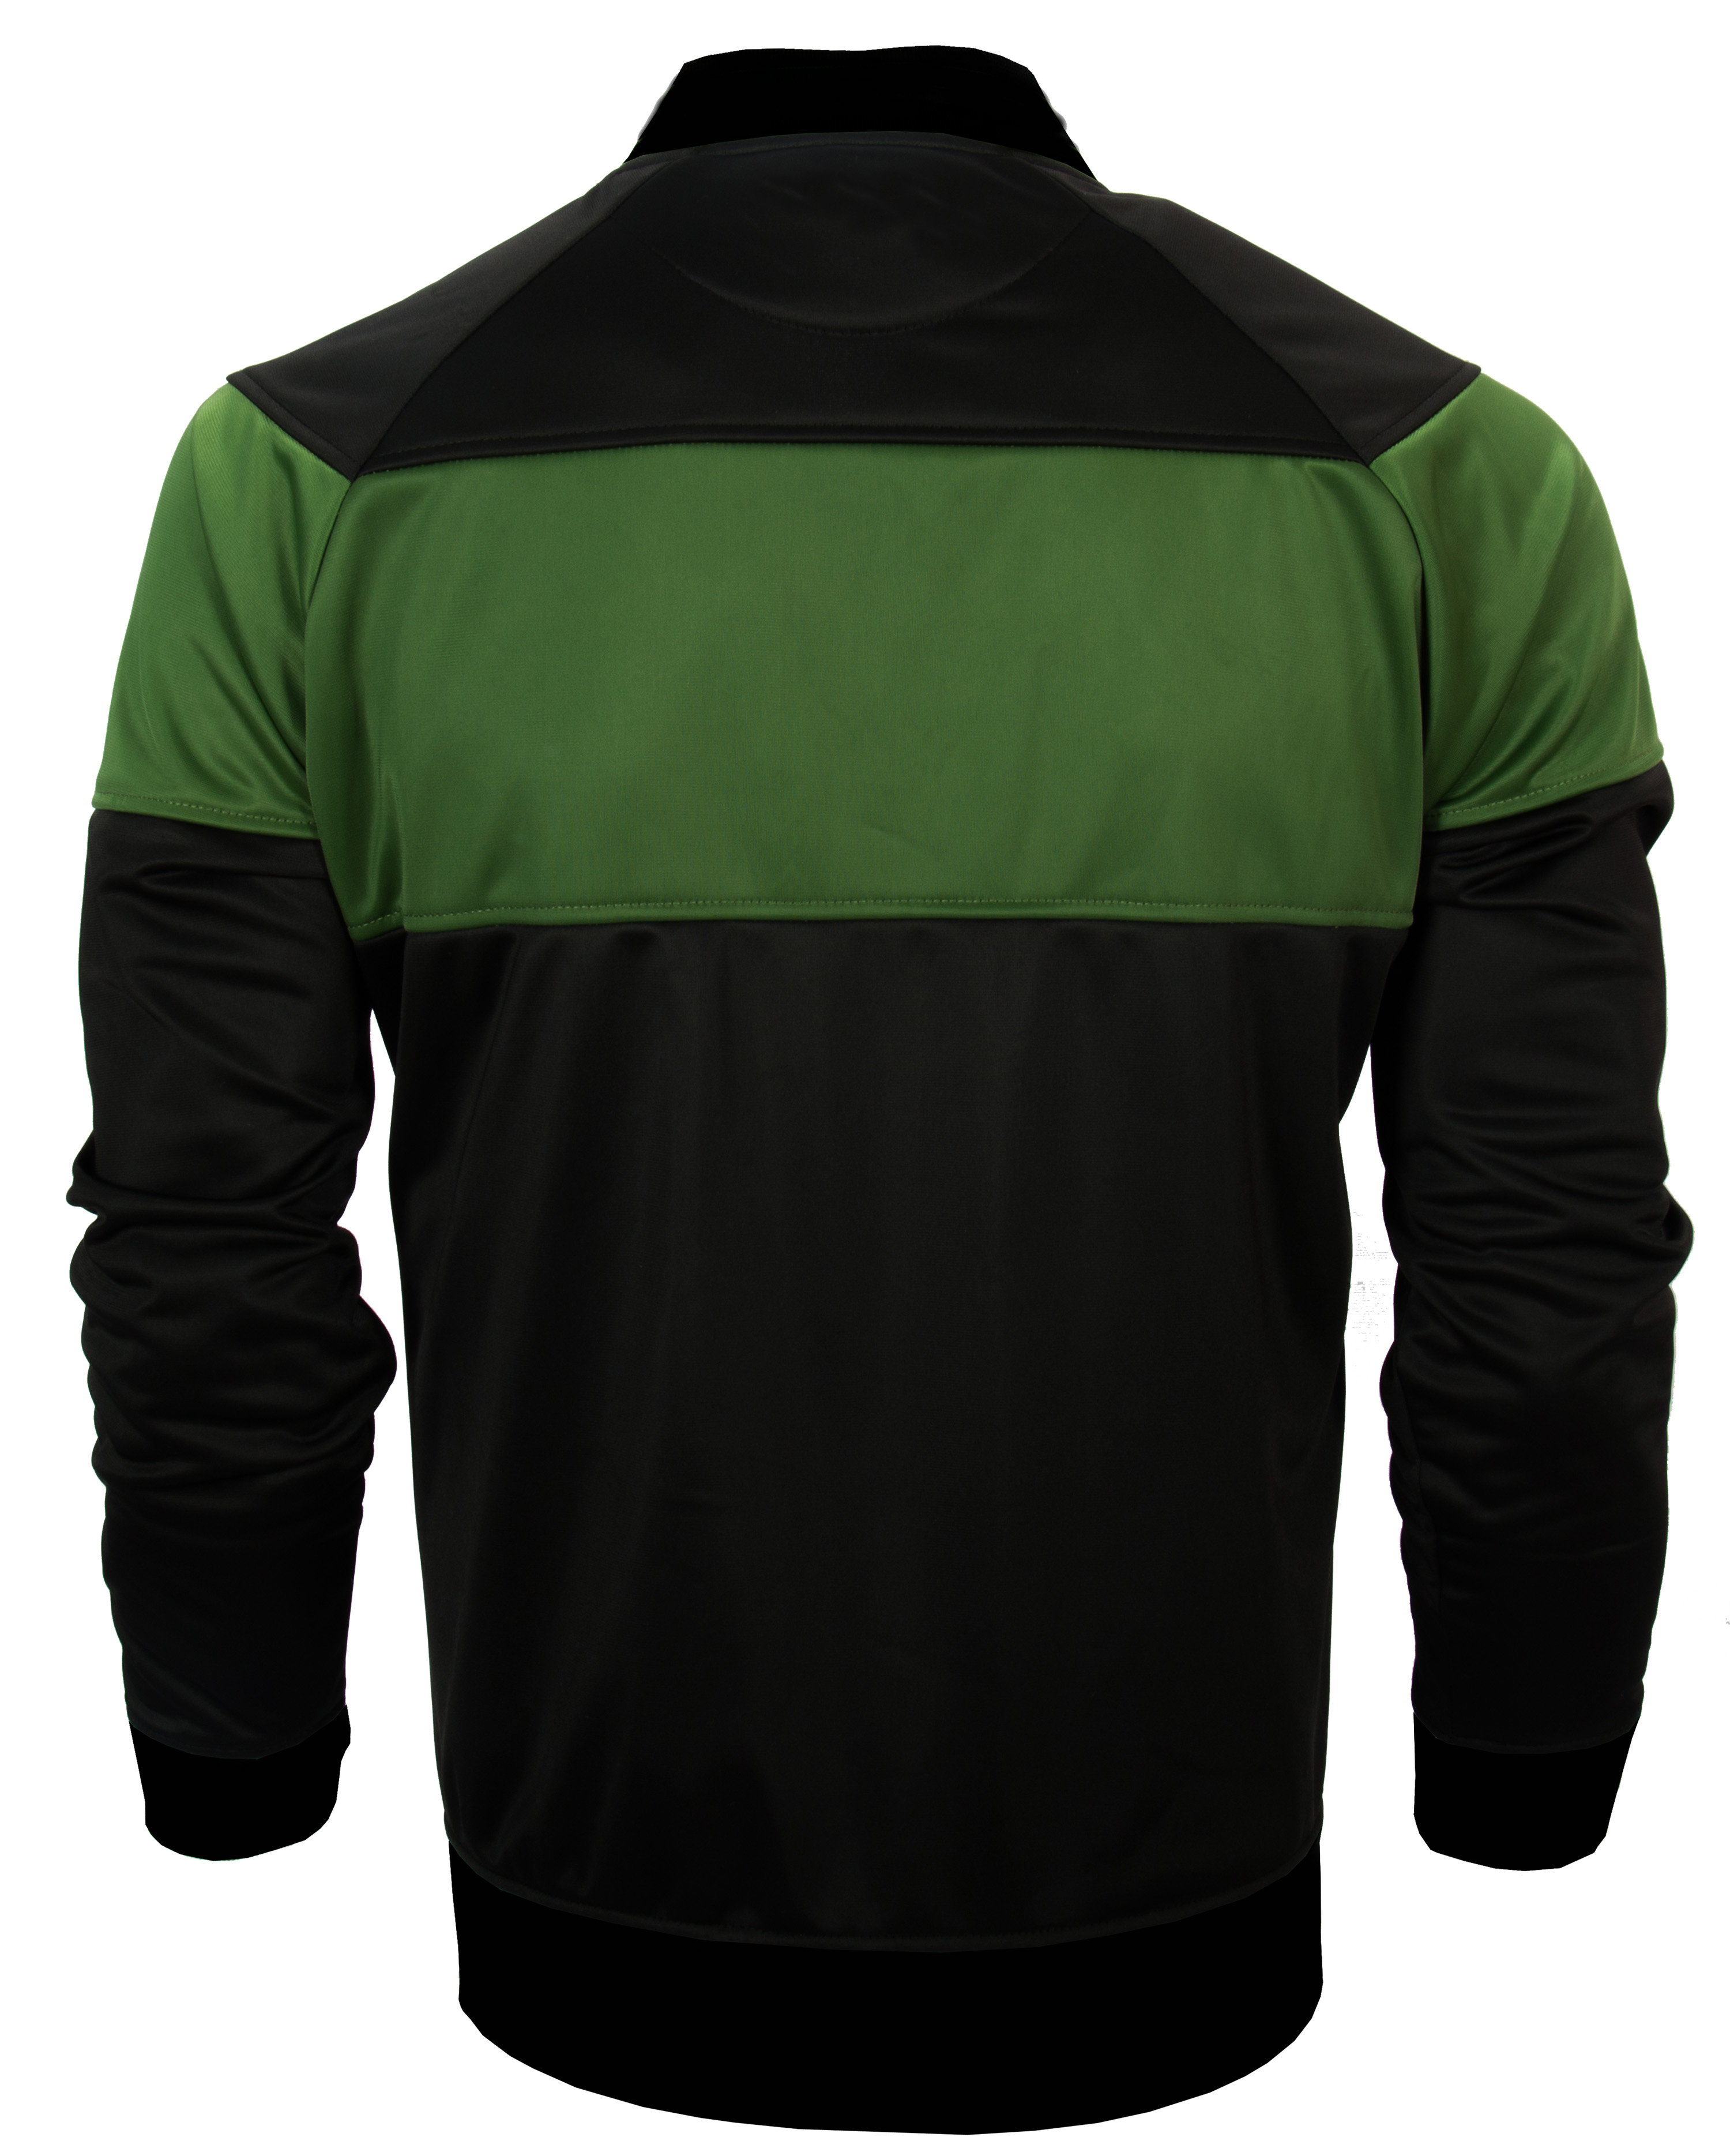 Product image for Irish Coat | Ireland Green & Black Bomber Jacket